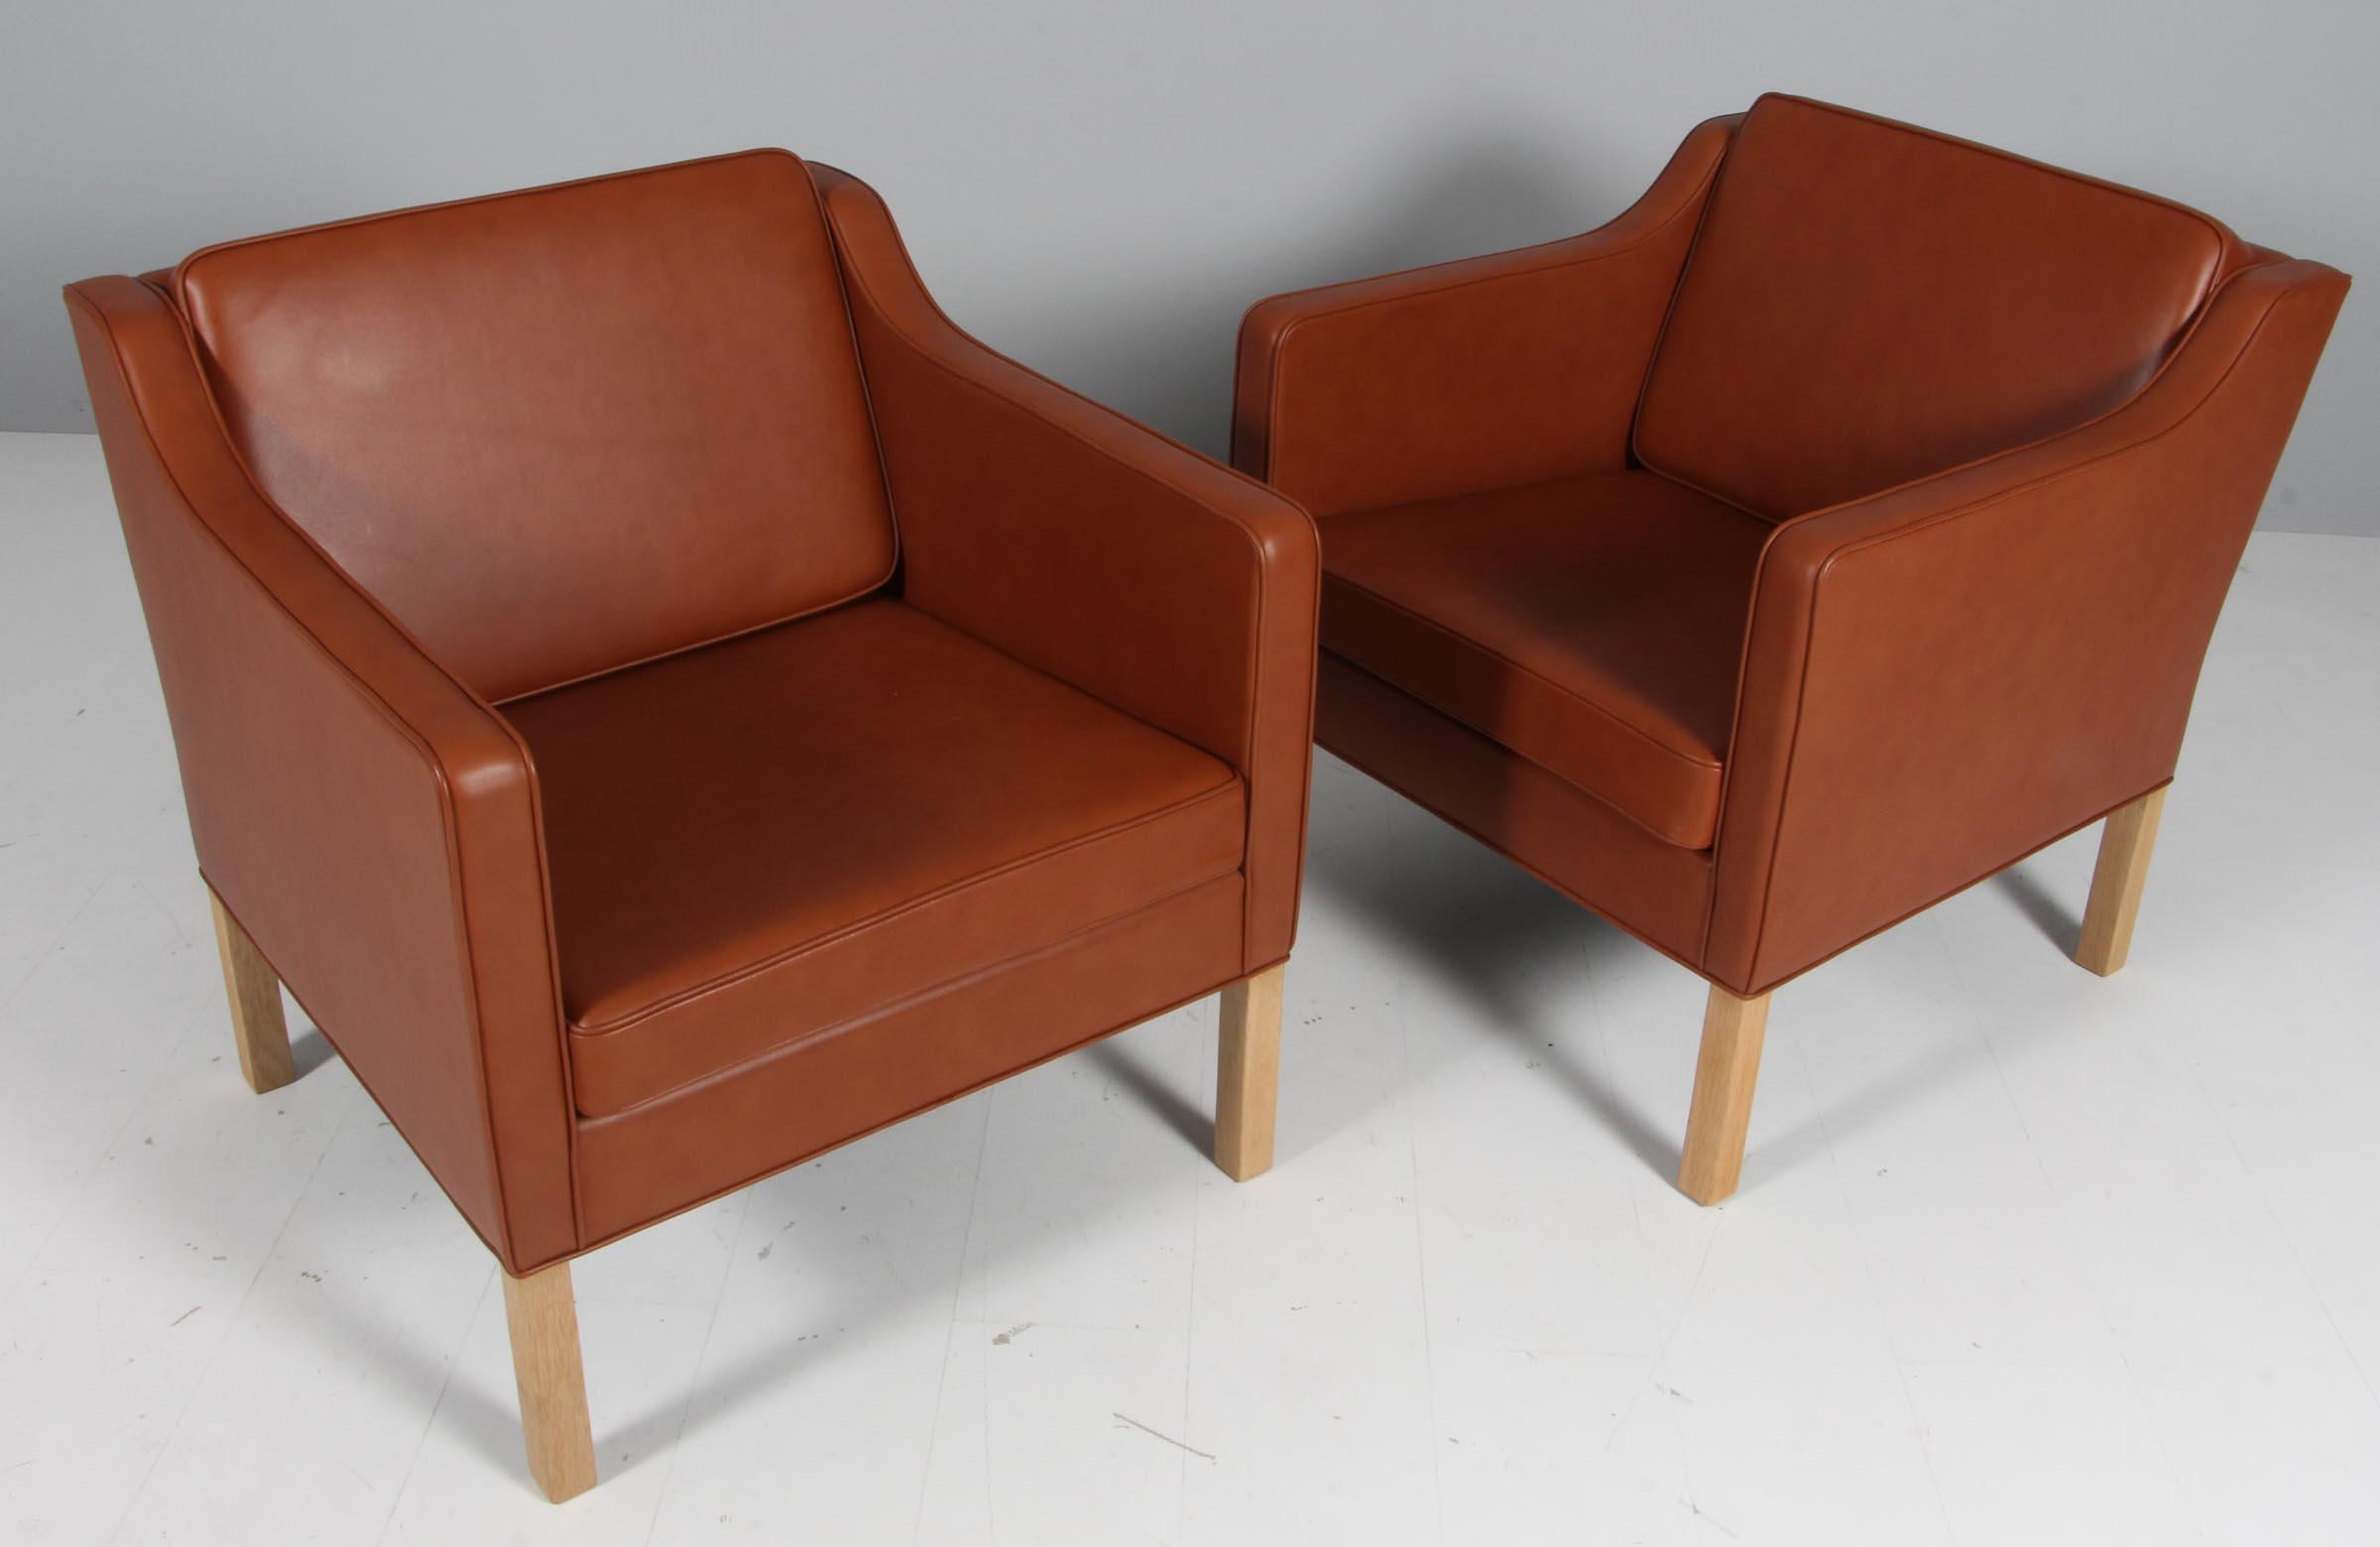 Chaise longue Børge Mogensen nouvellement recouverte de cuir pleine fleur cognac à l'aniline.

Pieds en chêne.

Modèle 2321, fabriqué par Fredericia Furniture.